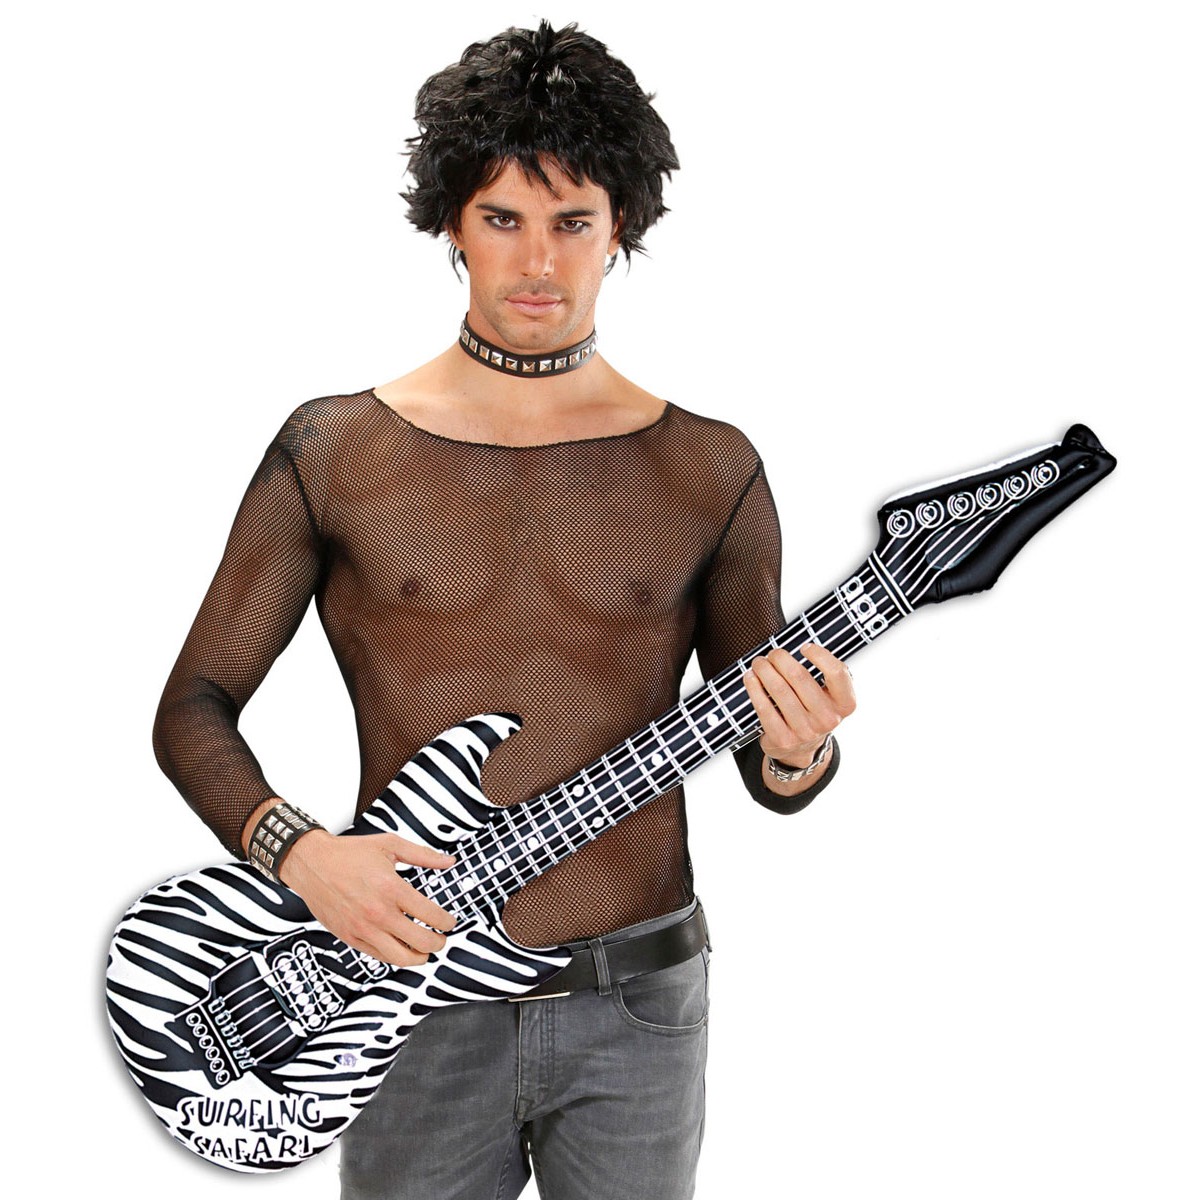 WIM 23942 aufblasbare Gitarre Zebra Musikstar Rock Heavy Metal Karneval Zubehör